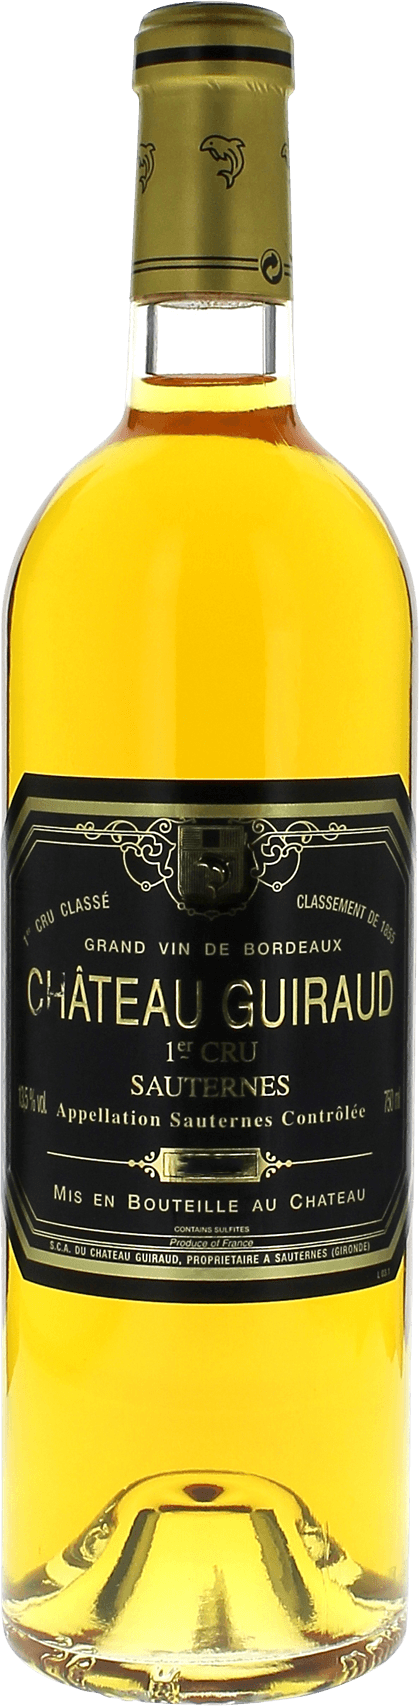 Guiraud 1997  Sauternes, Bordeaux blanc